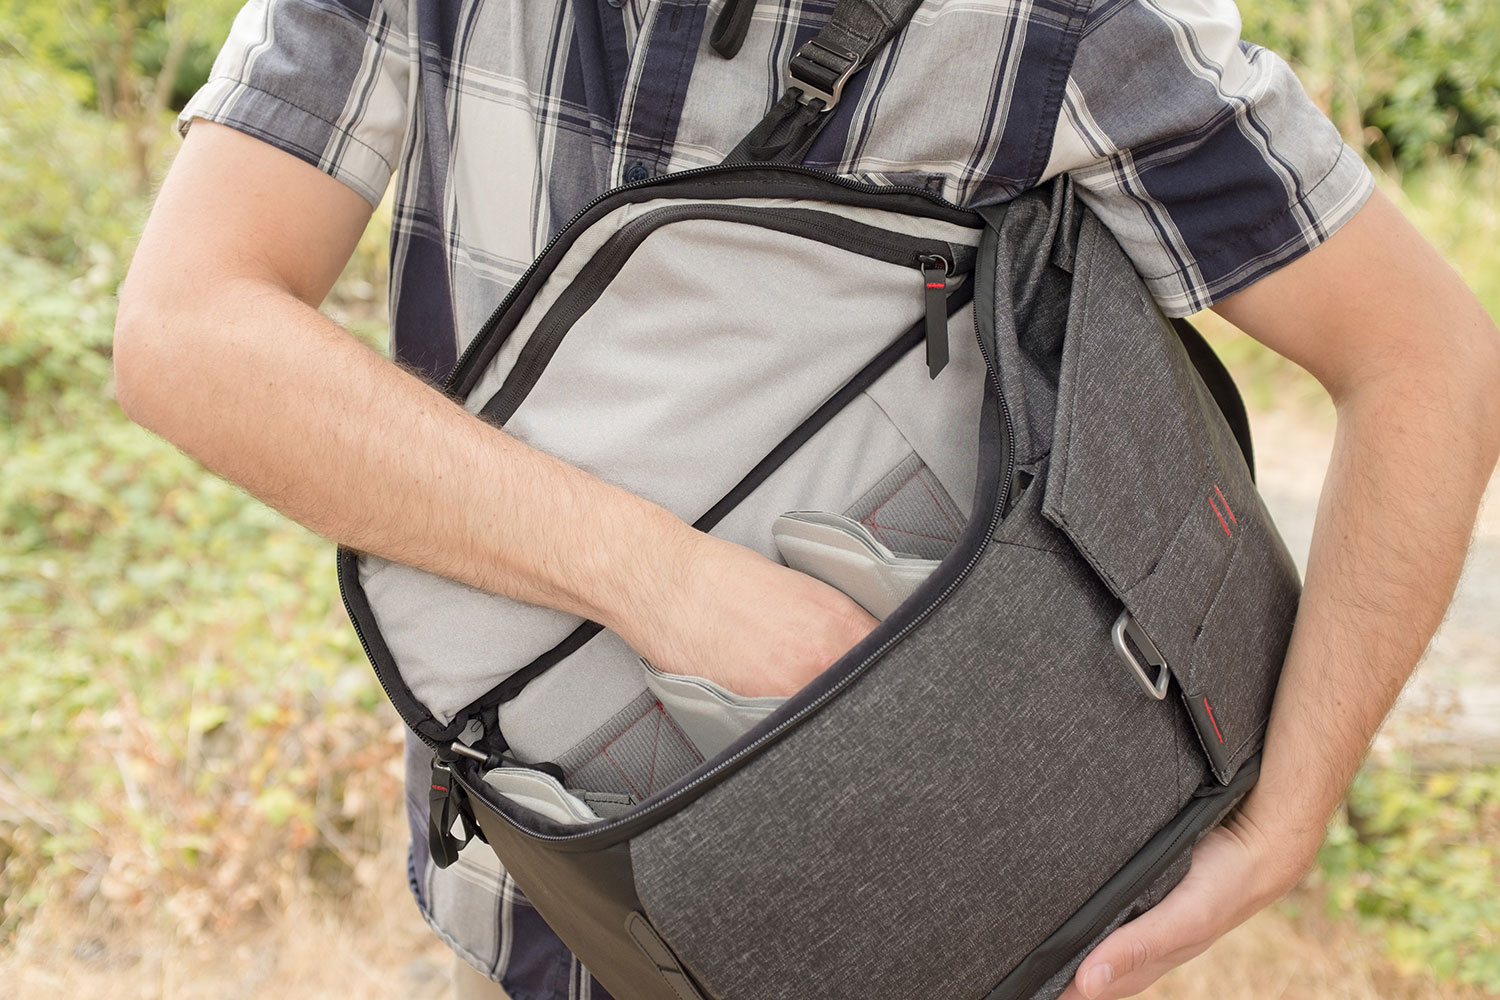 Peak Design Everyday Backpack Hands On | Digital Trends